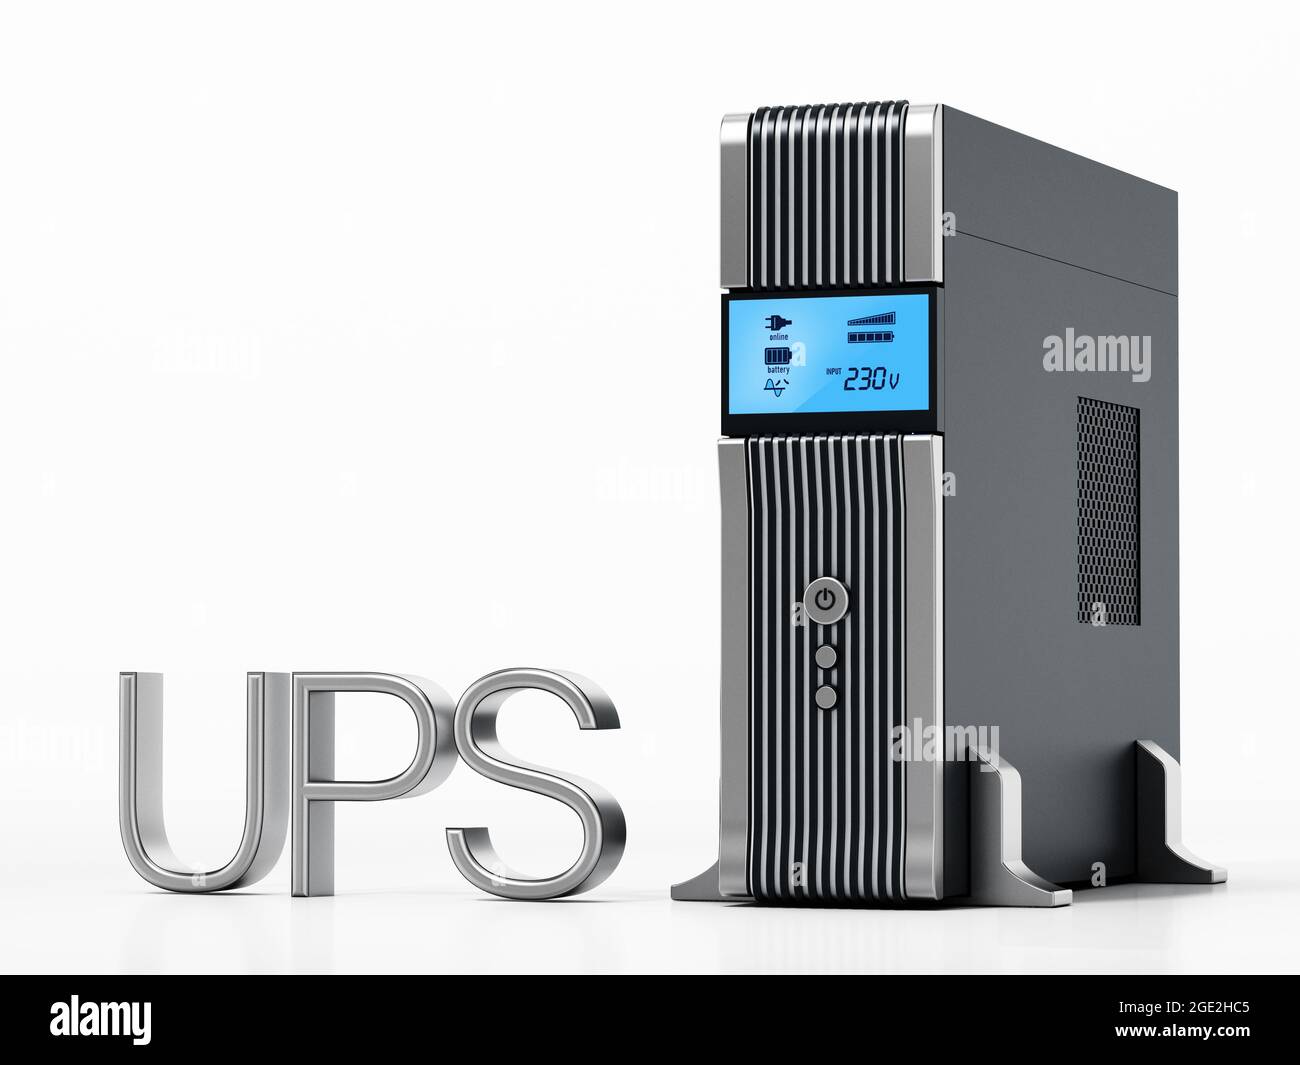 Uninterruptible power supply UPS isolated on white background. 3D illustration. Stock Photo